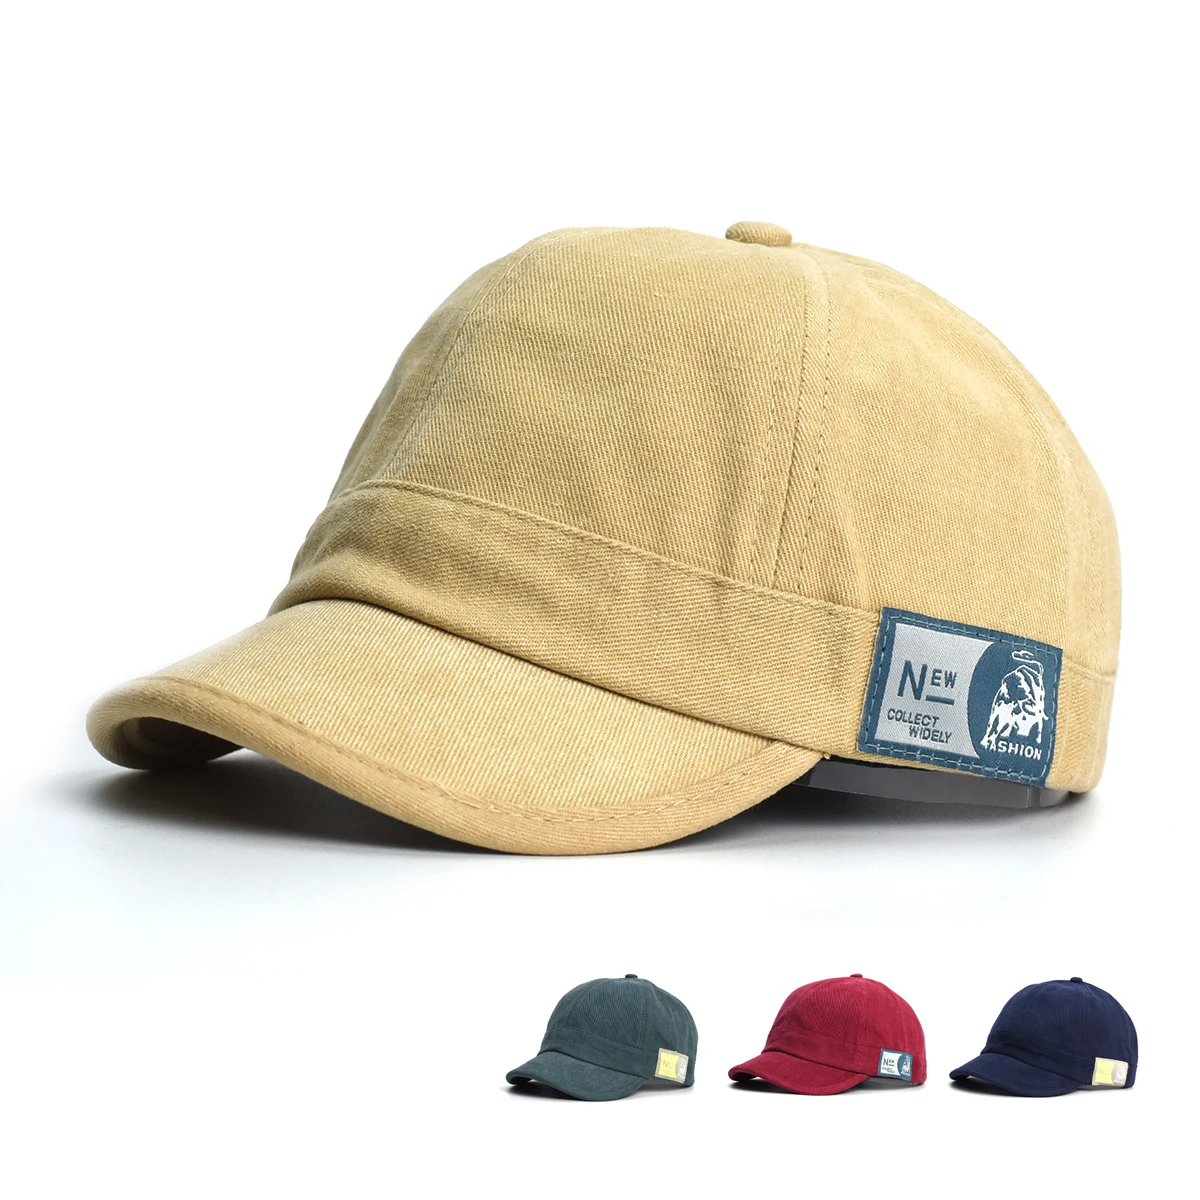 

Fashion Short Brim Cotton Baseball Cap Men Women Soft Vintage Dad Hat Adjustable Trucker Style Low Profile Caps